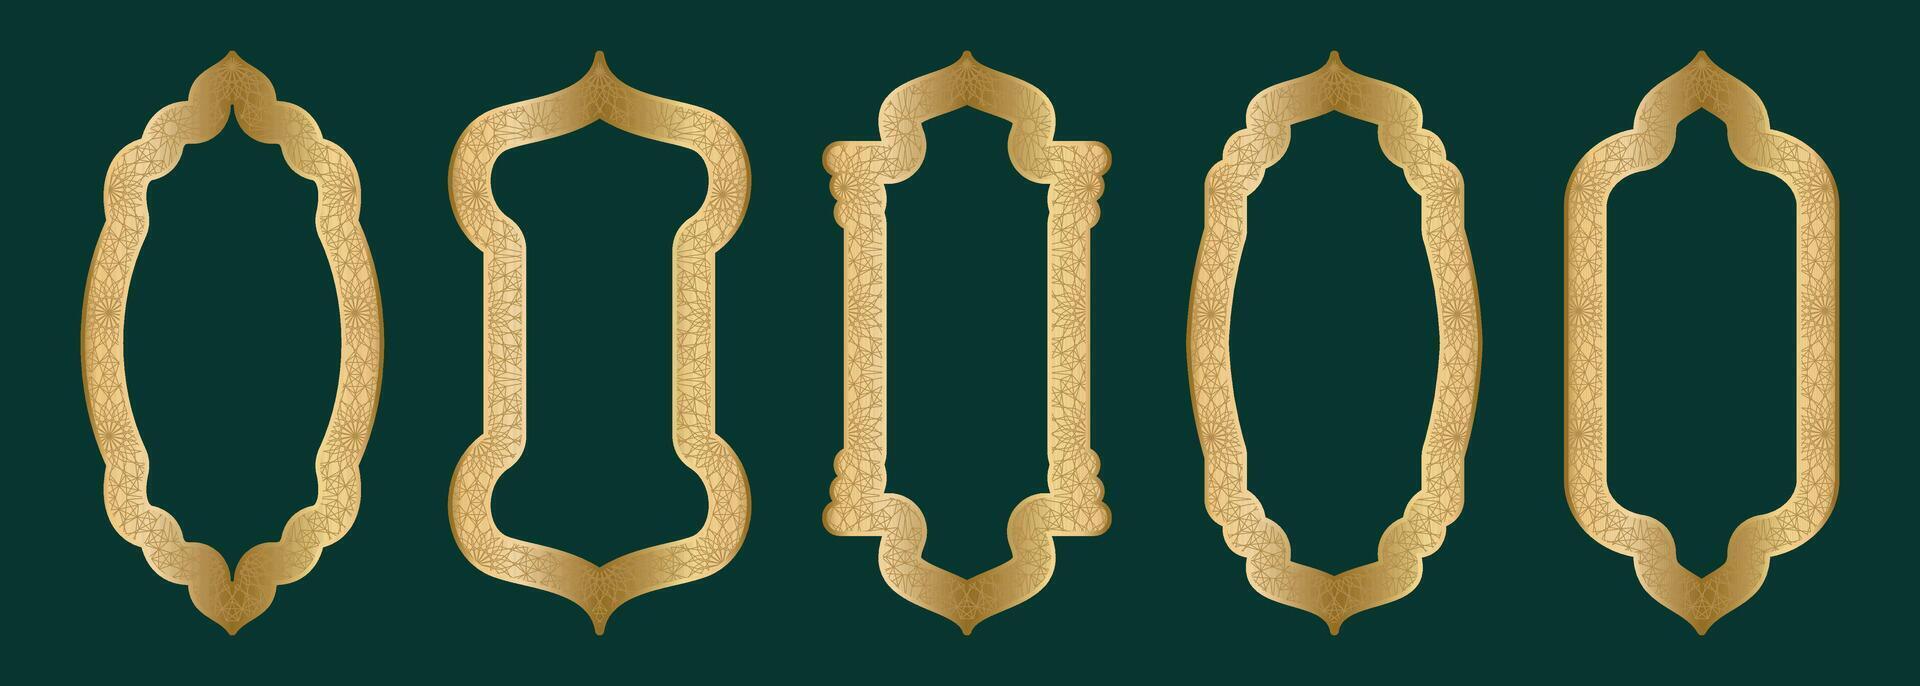 guld dekorativ båge ram form islamic dörr eller fönster med geometrisk girikh mönster, silhuett arabicum båge. lyx uppsättning i orientalisk stil. ramar i arabicum muslim design för ramadan kareem. vektor